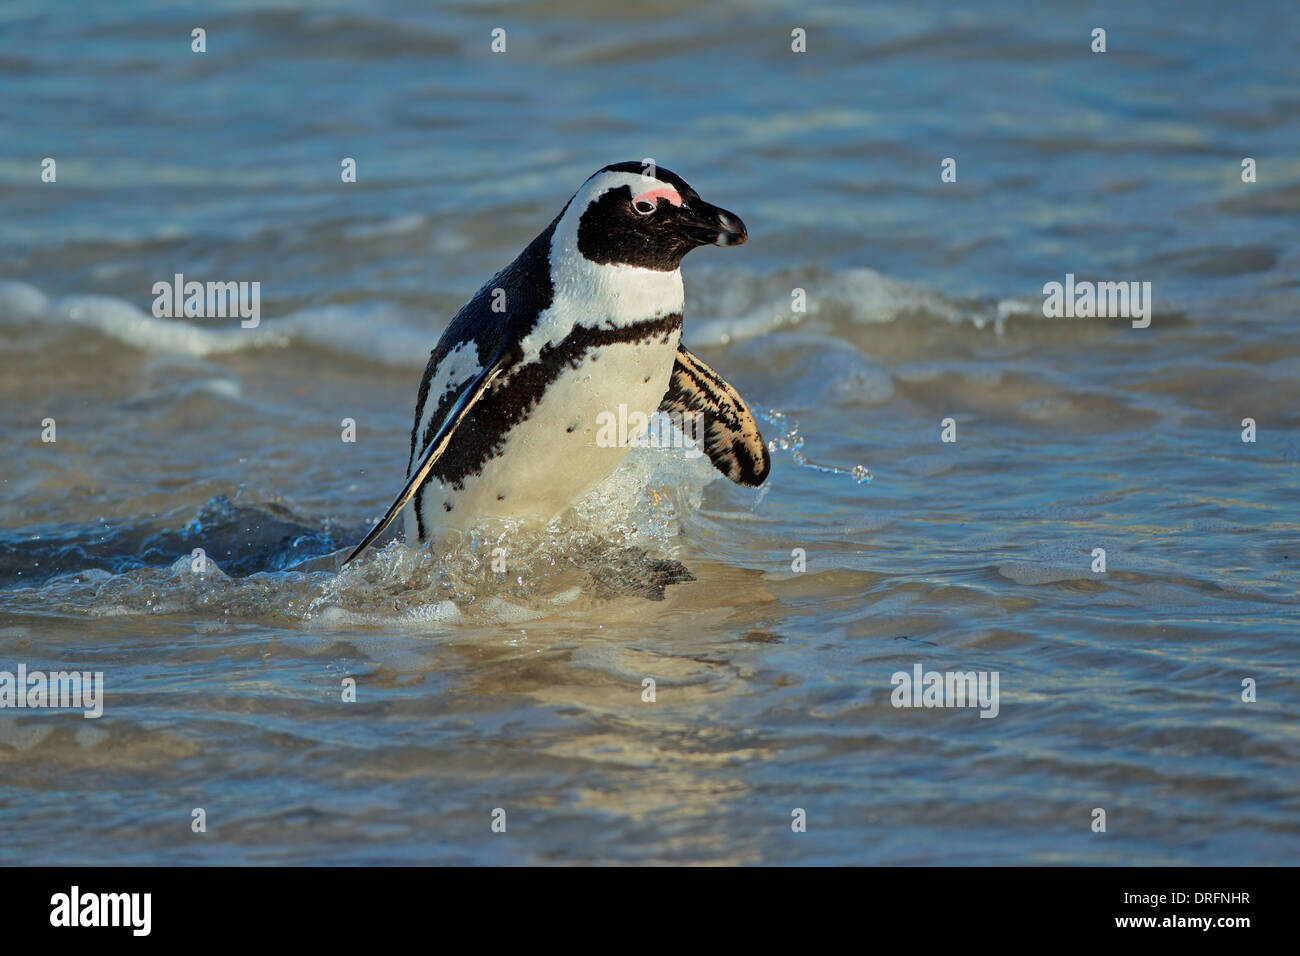 Afrikanische Pinguin (Spheniscus Demersus) im flachen Wasser, Western Cape, Südafrika Stockfoto